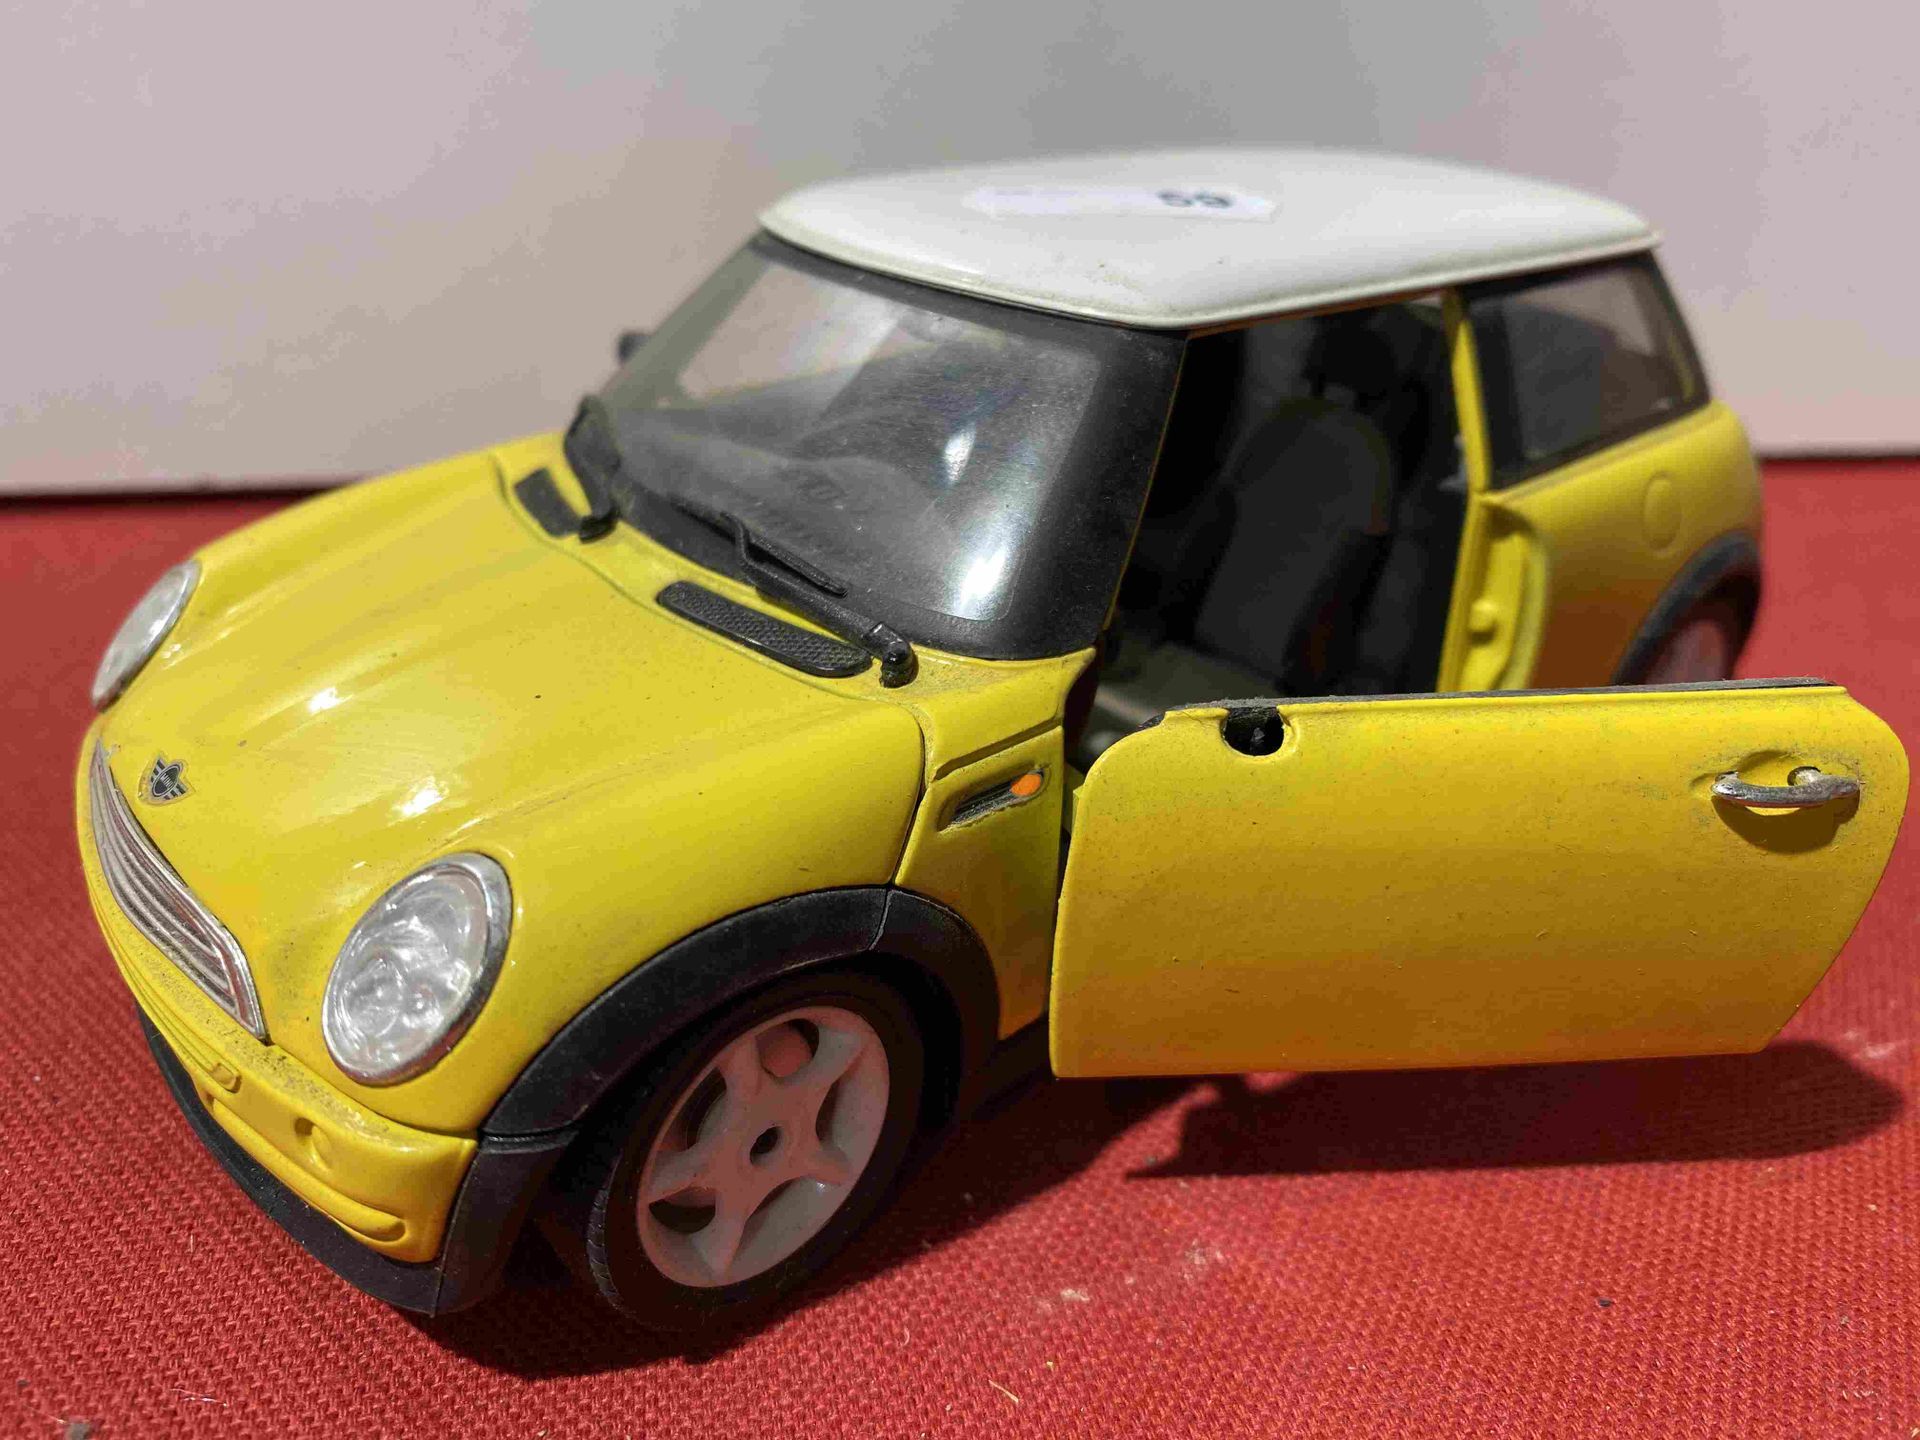 1 miniature car including: 1 MINI COOPER BURAGO Scale 1/…